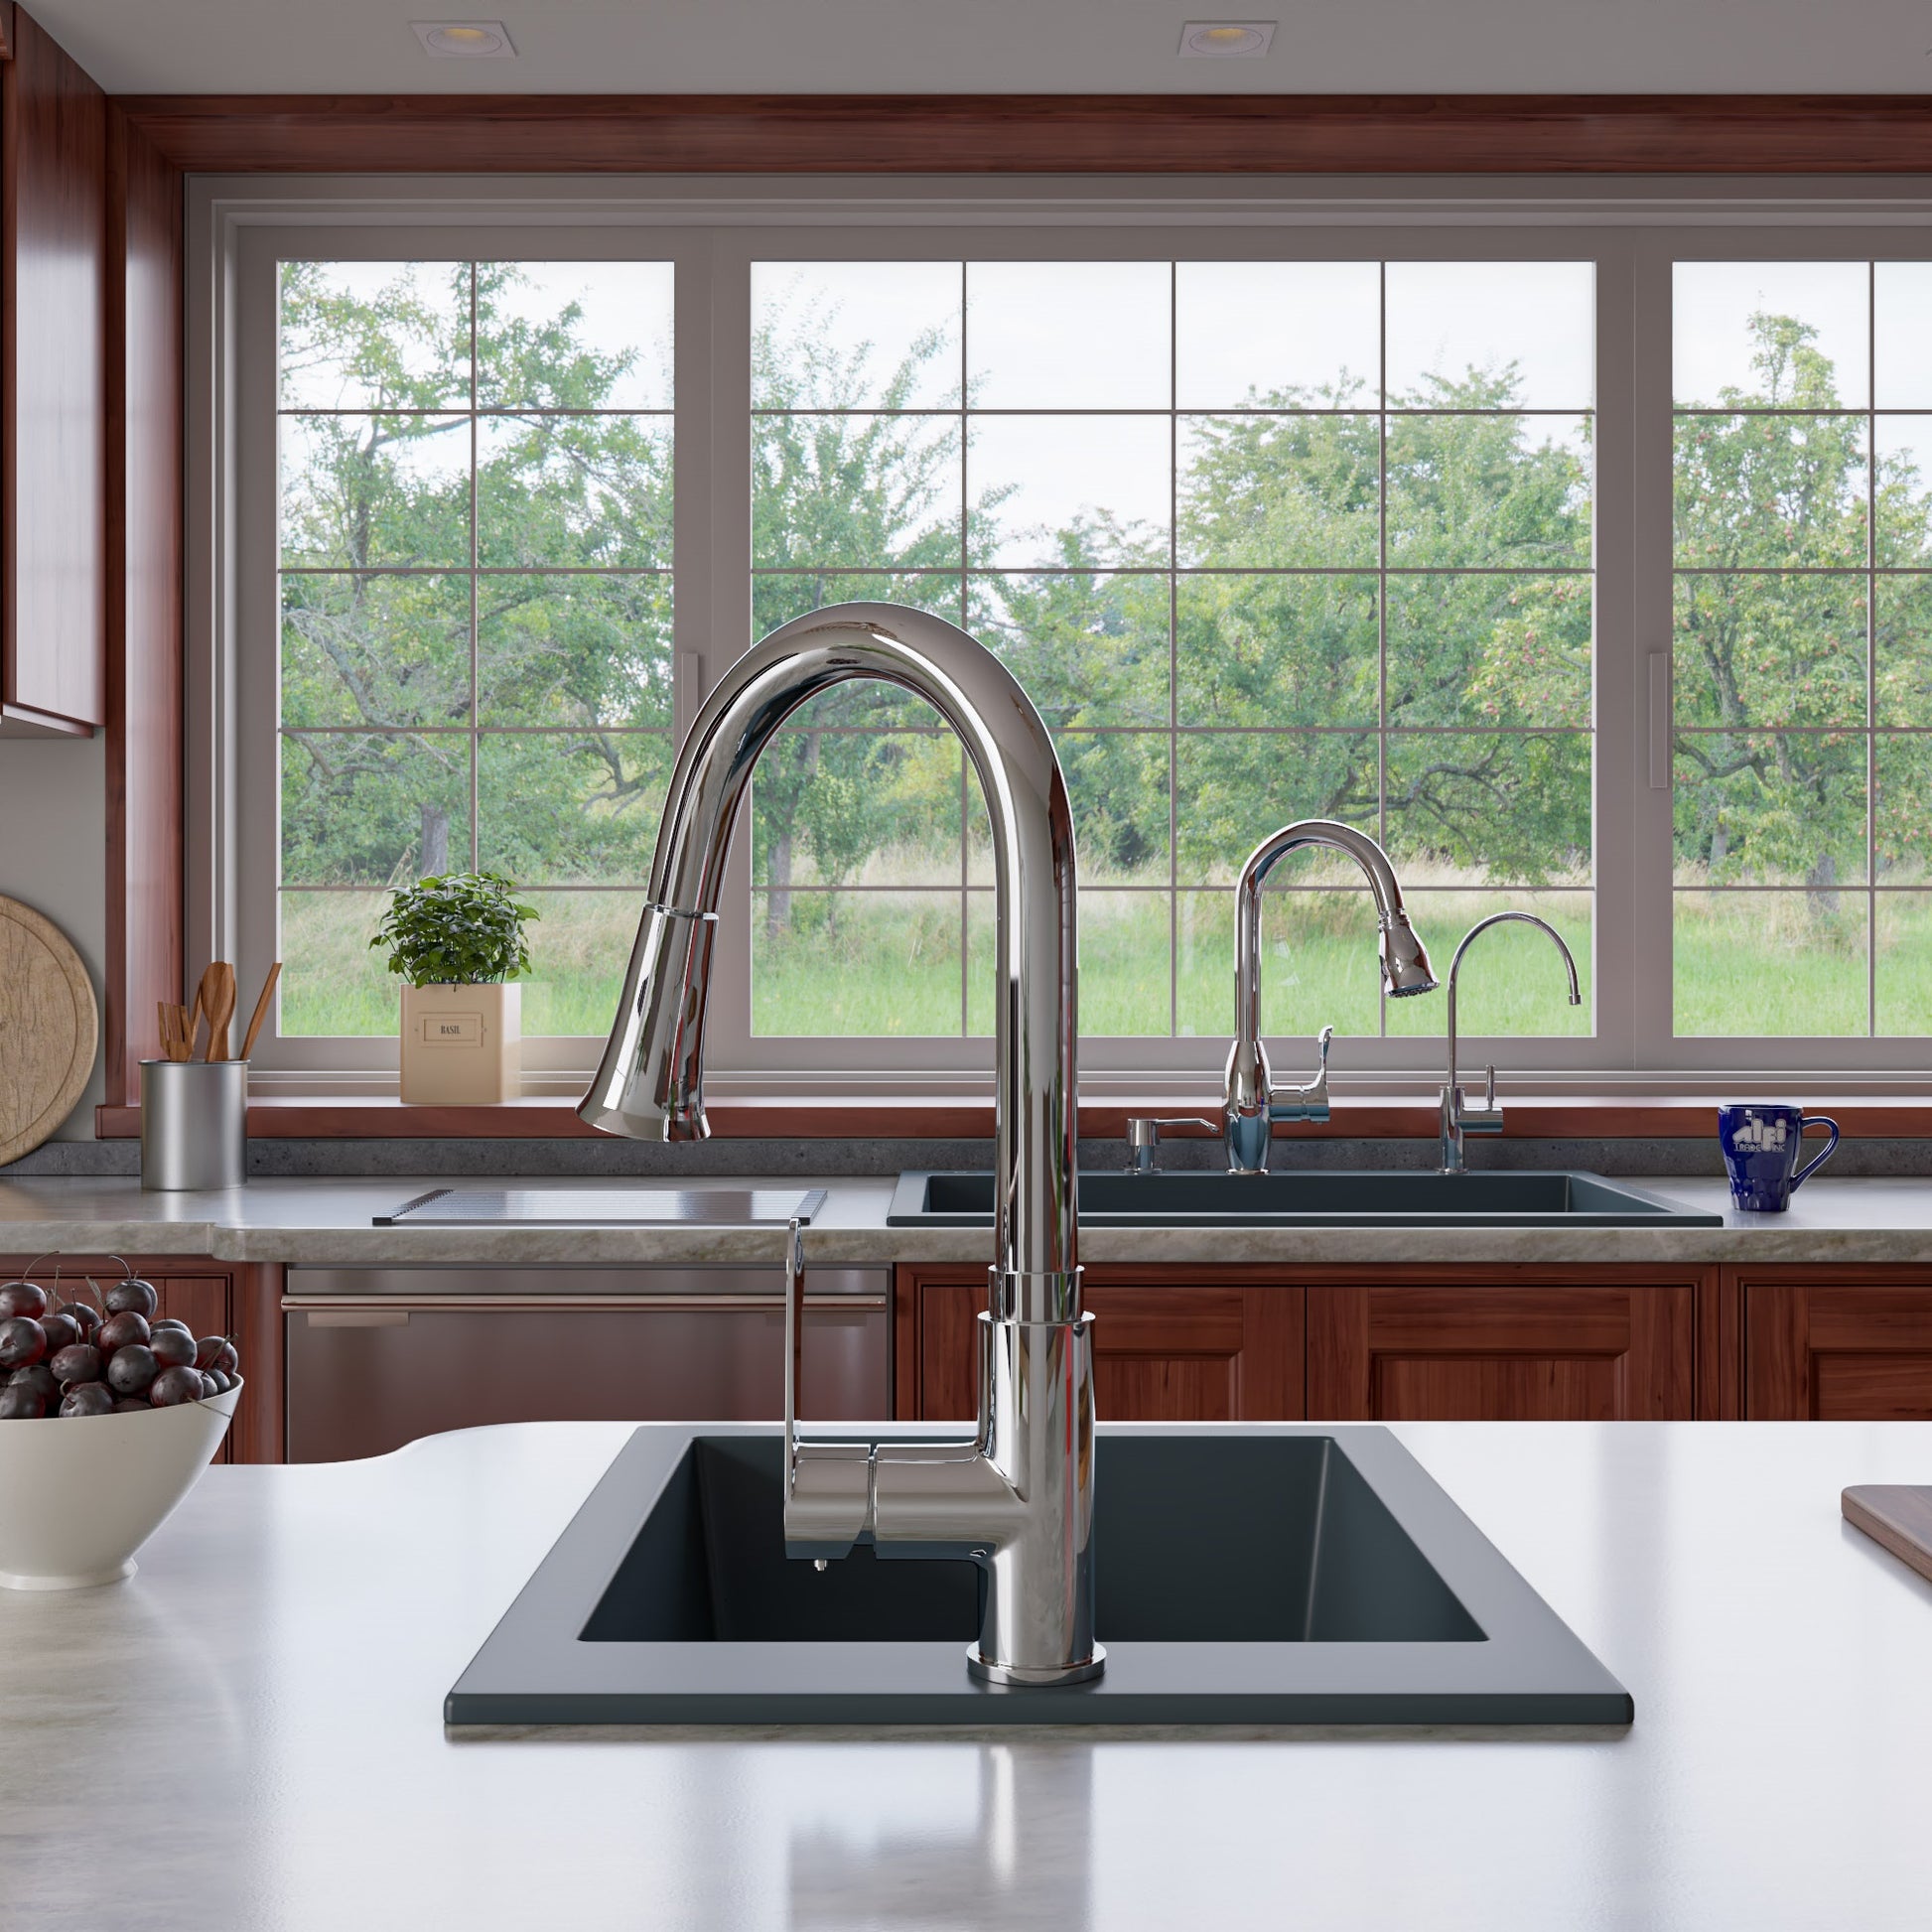 Alfi brand AB3322DI 33" Single Bowl Drop In Granite Composite Kitchen Sink